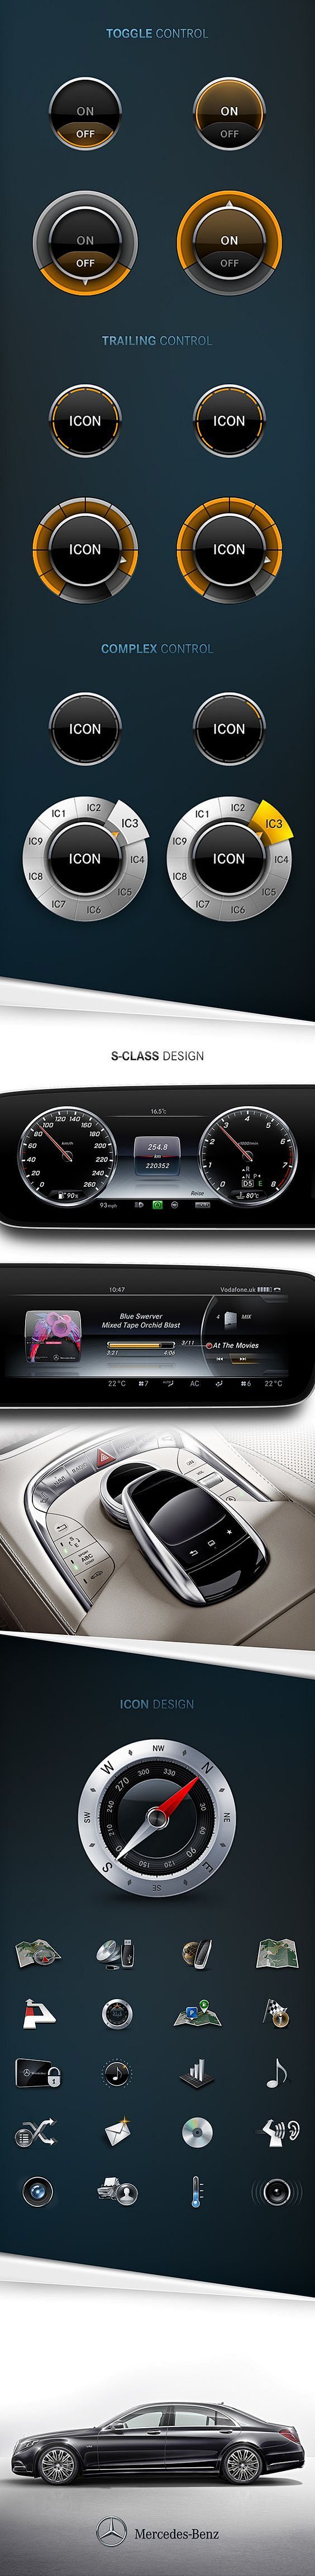 Mercedes-Benz UI/UX ...